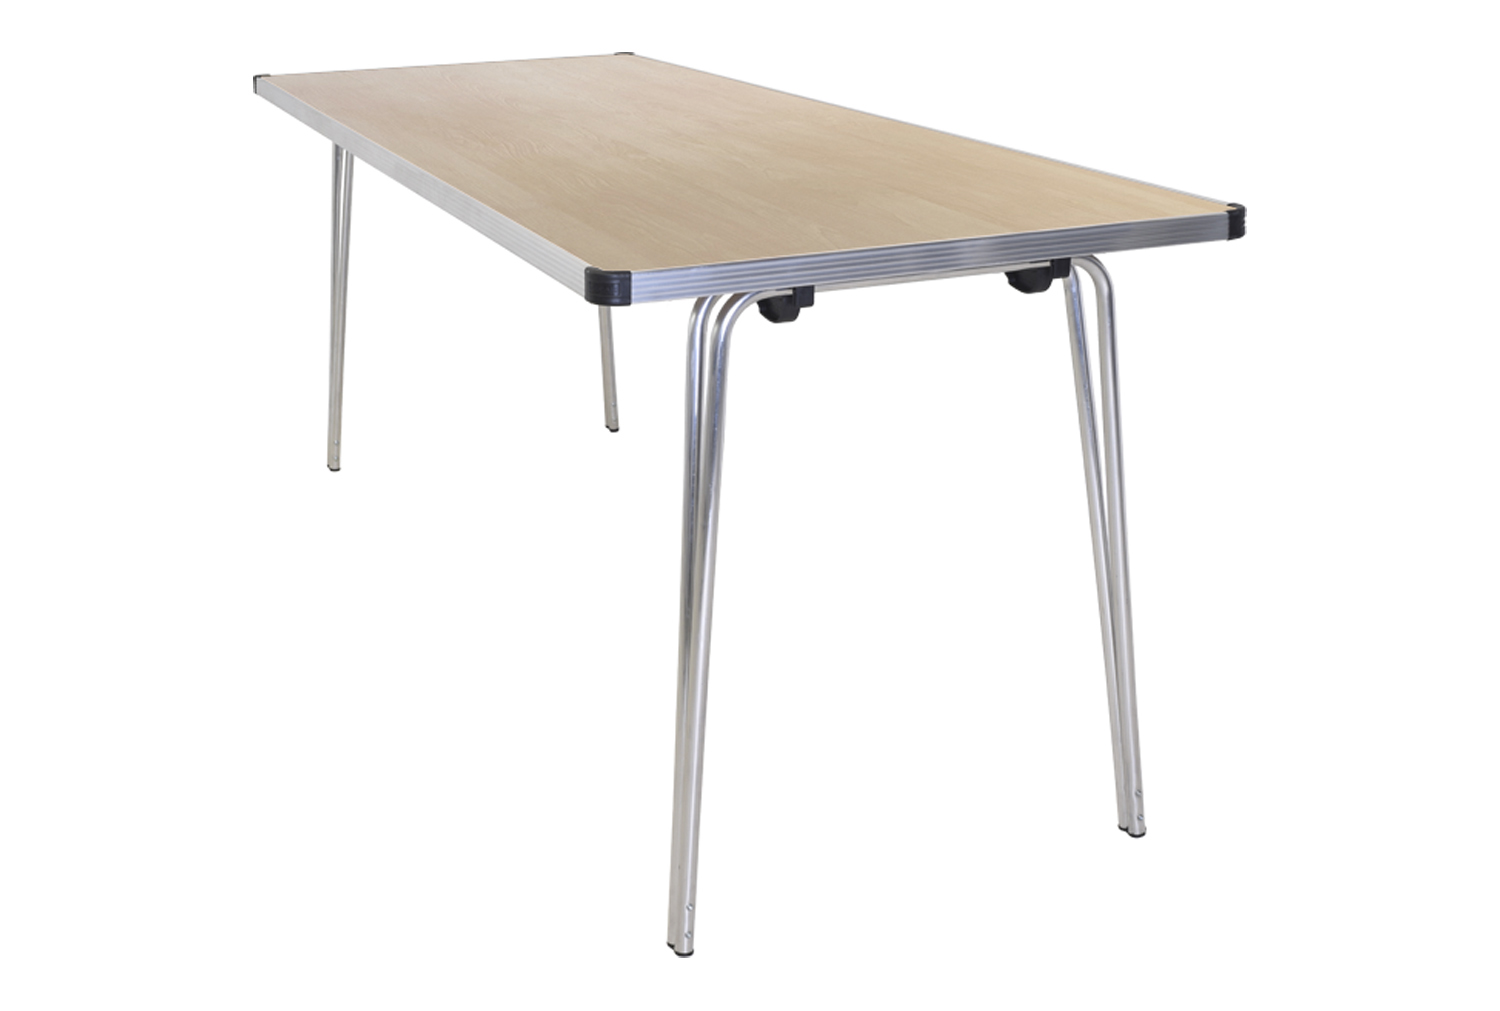 Gopak Contour Folding Table, 183wx61d (cm), Maple